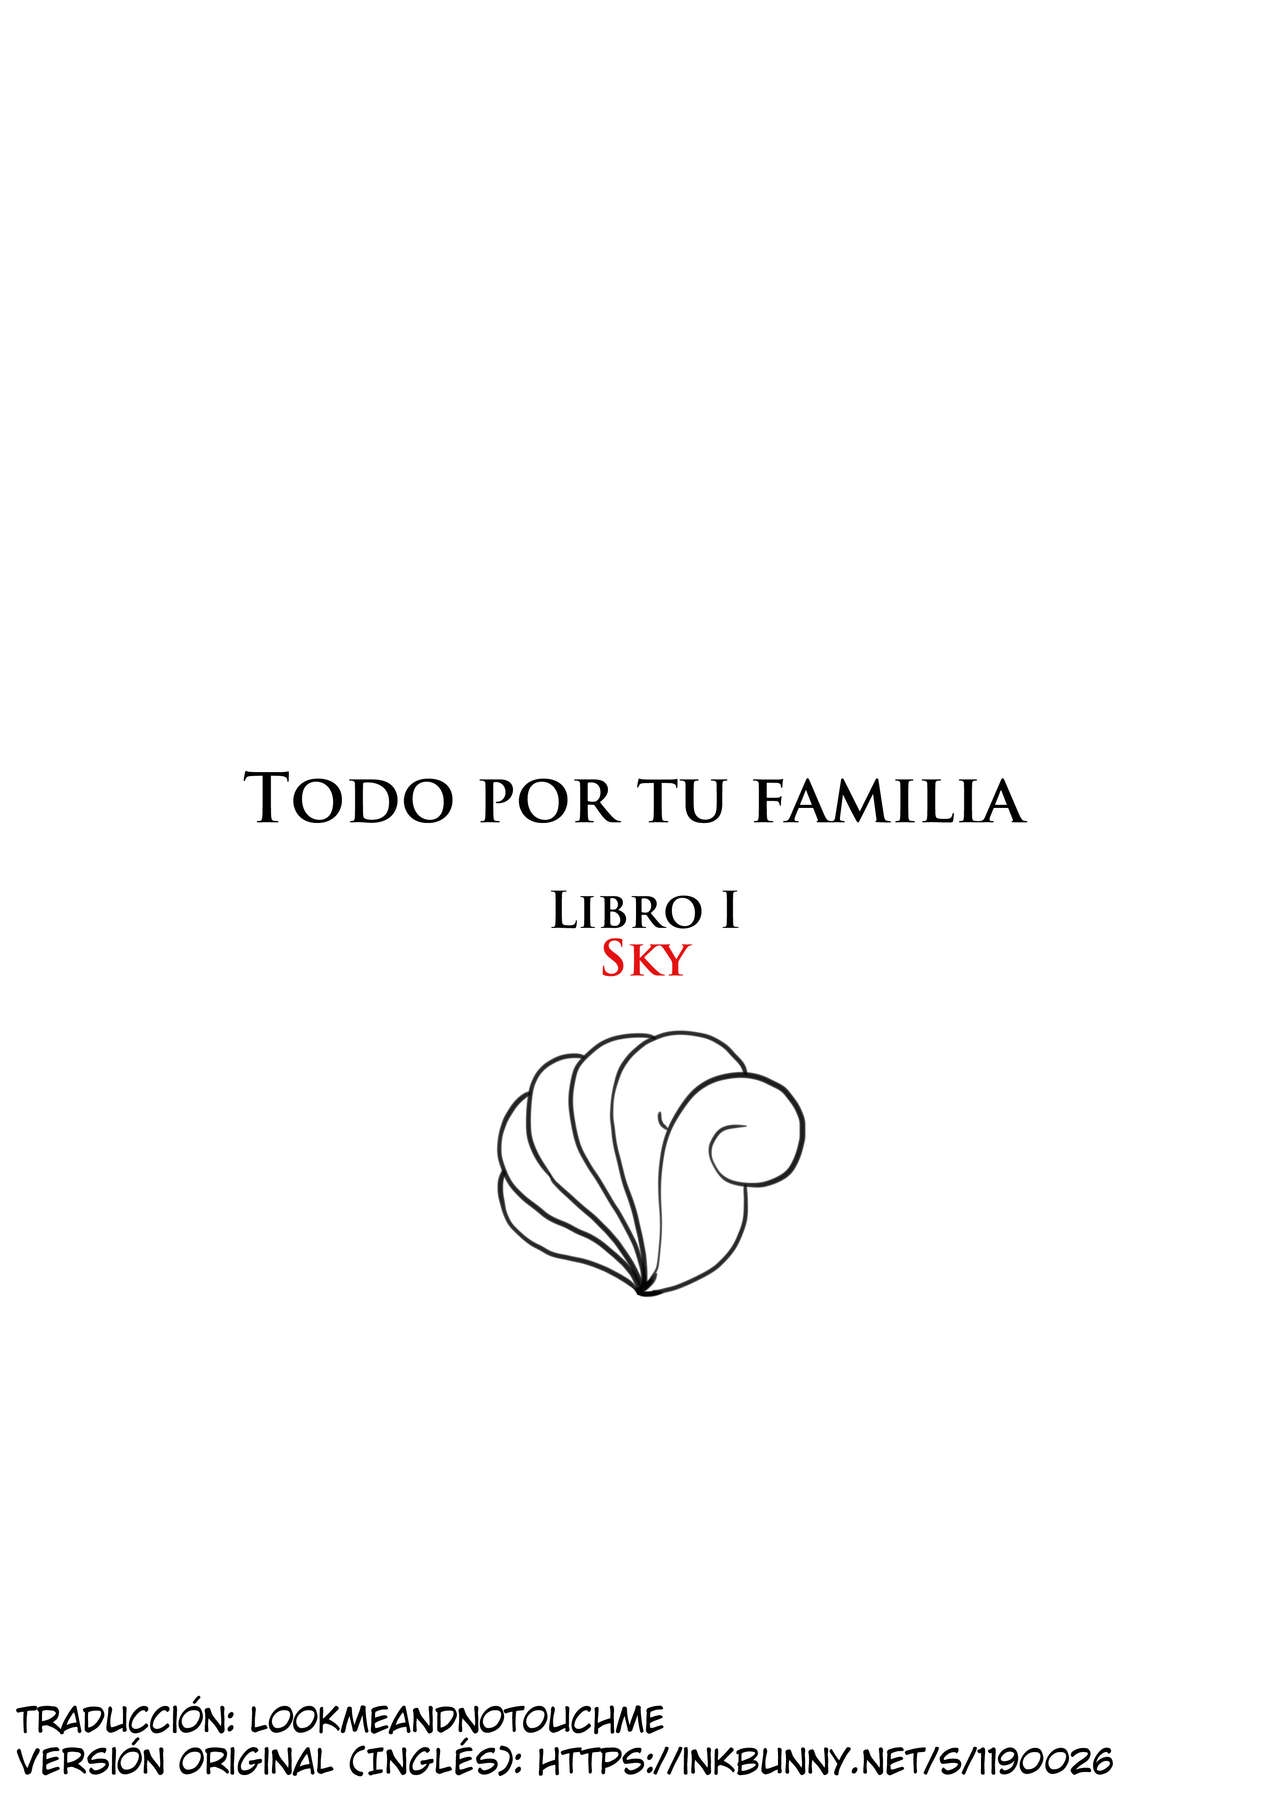 [Aogami] Anything For Your Family Book 1 Sky | Todo por tu familia Libro 1 Sky (Pokémon) [Spanish] [lookmeandnotouchme] 0